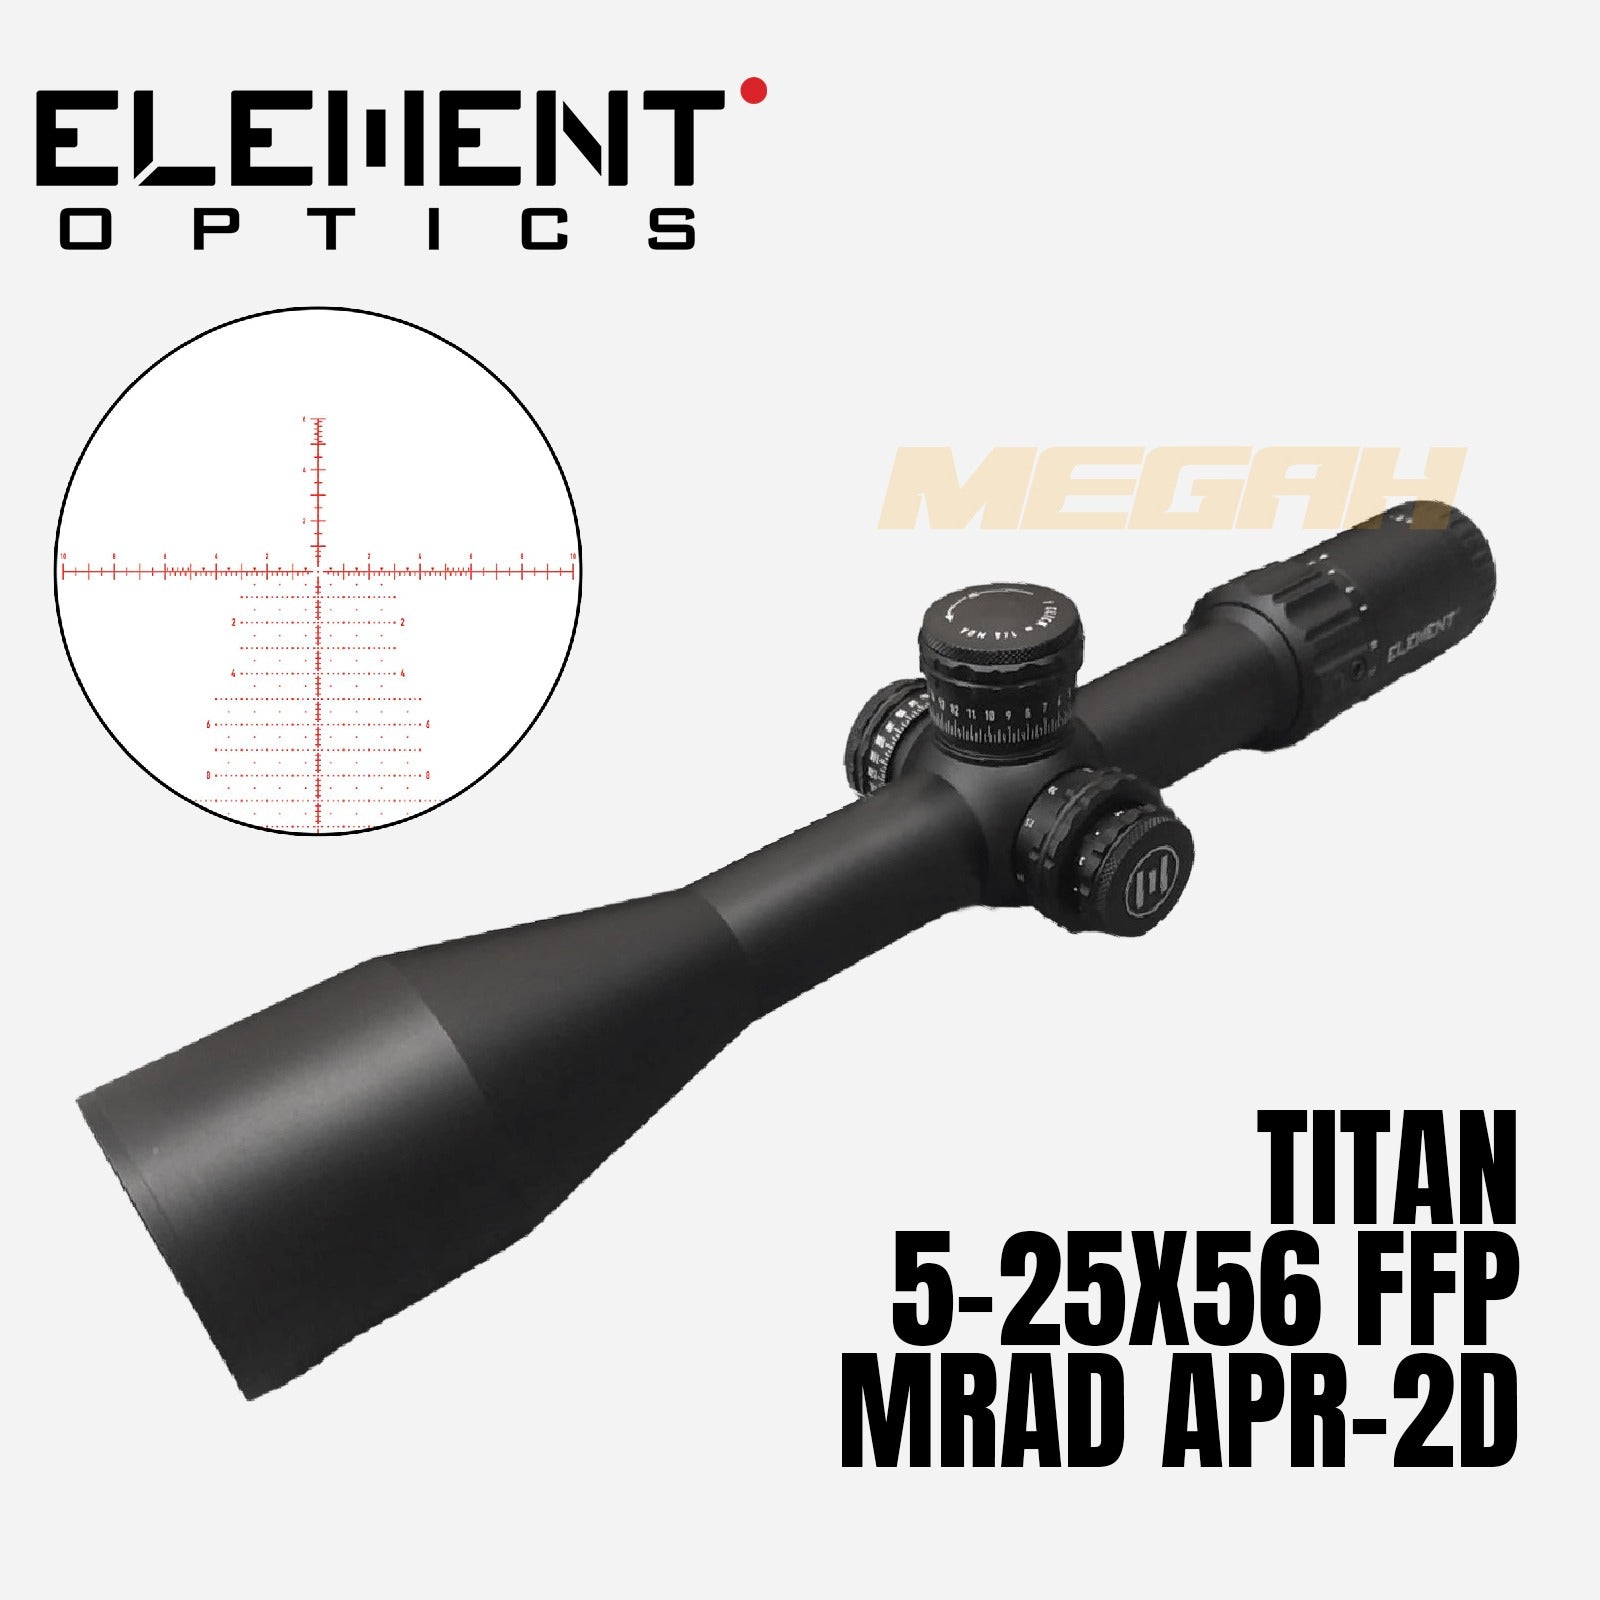 ELEMENT OPTICS TITAN 5-25X56 FFP APR-2D MRAD